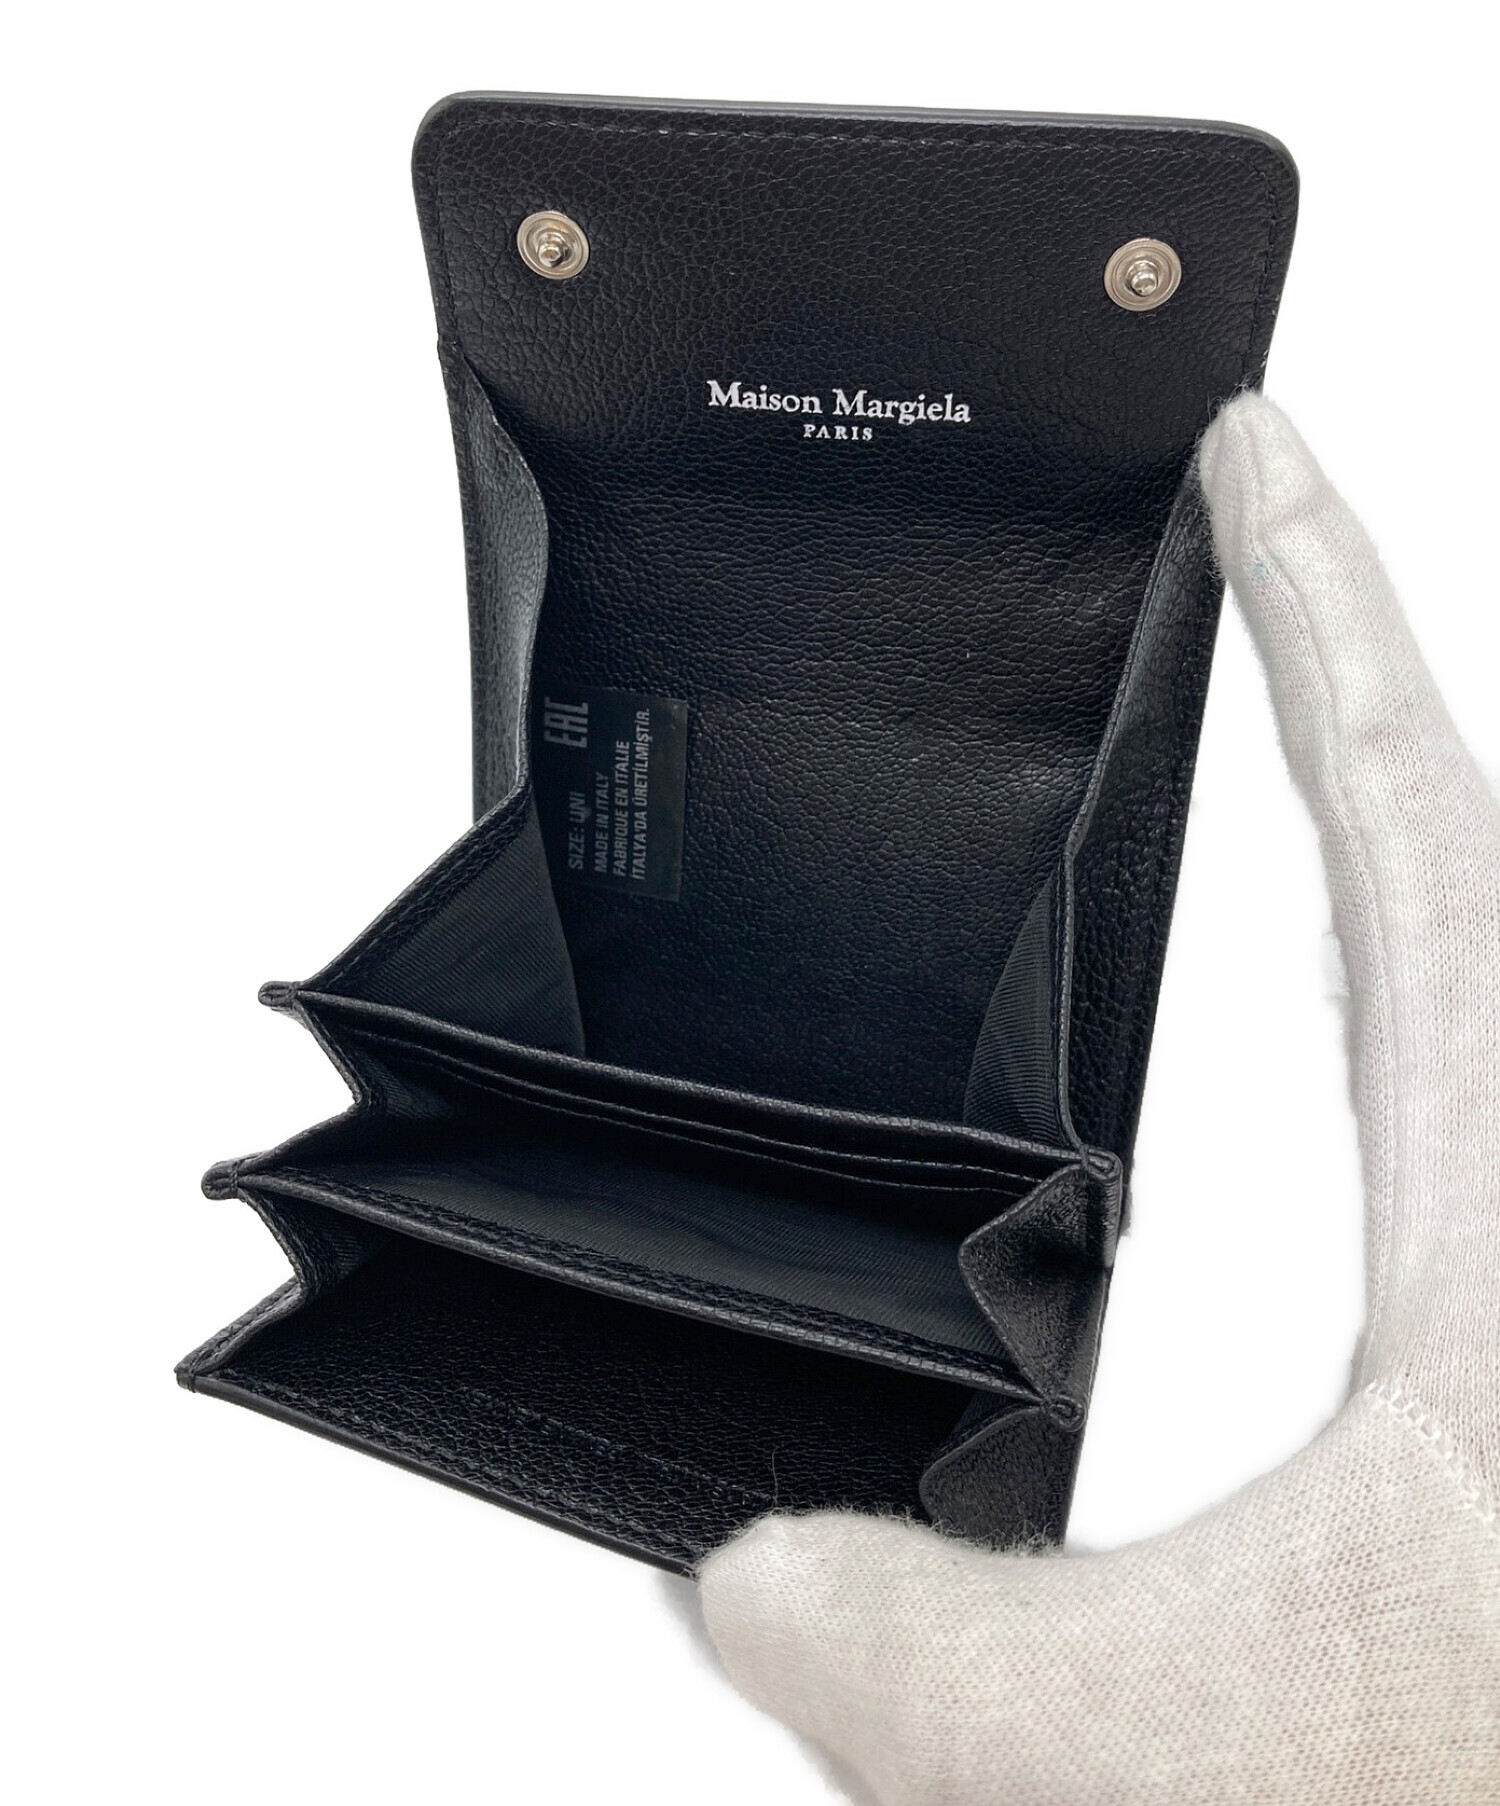 Maison Margiela (メゾンマルジェラ) アコーディオンカードケース ブラック